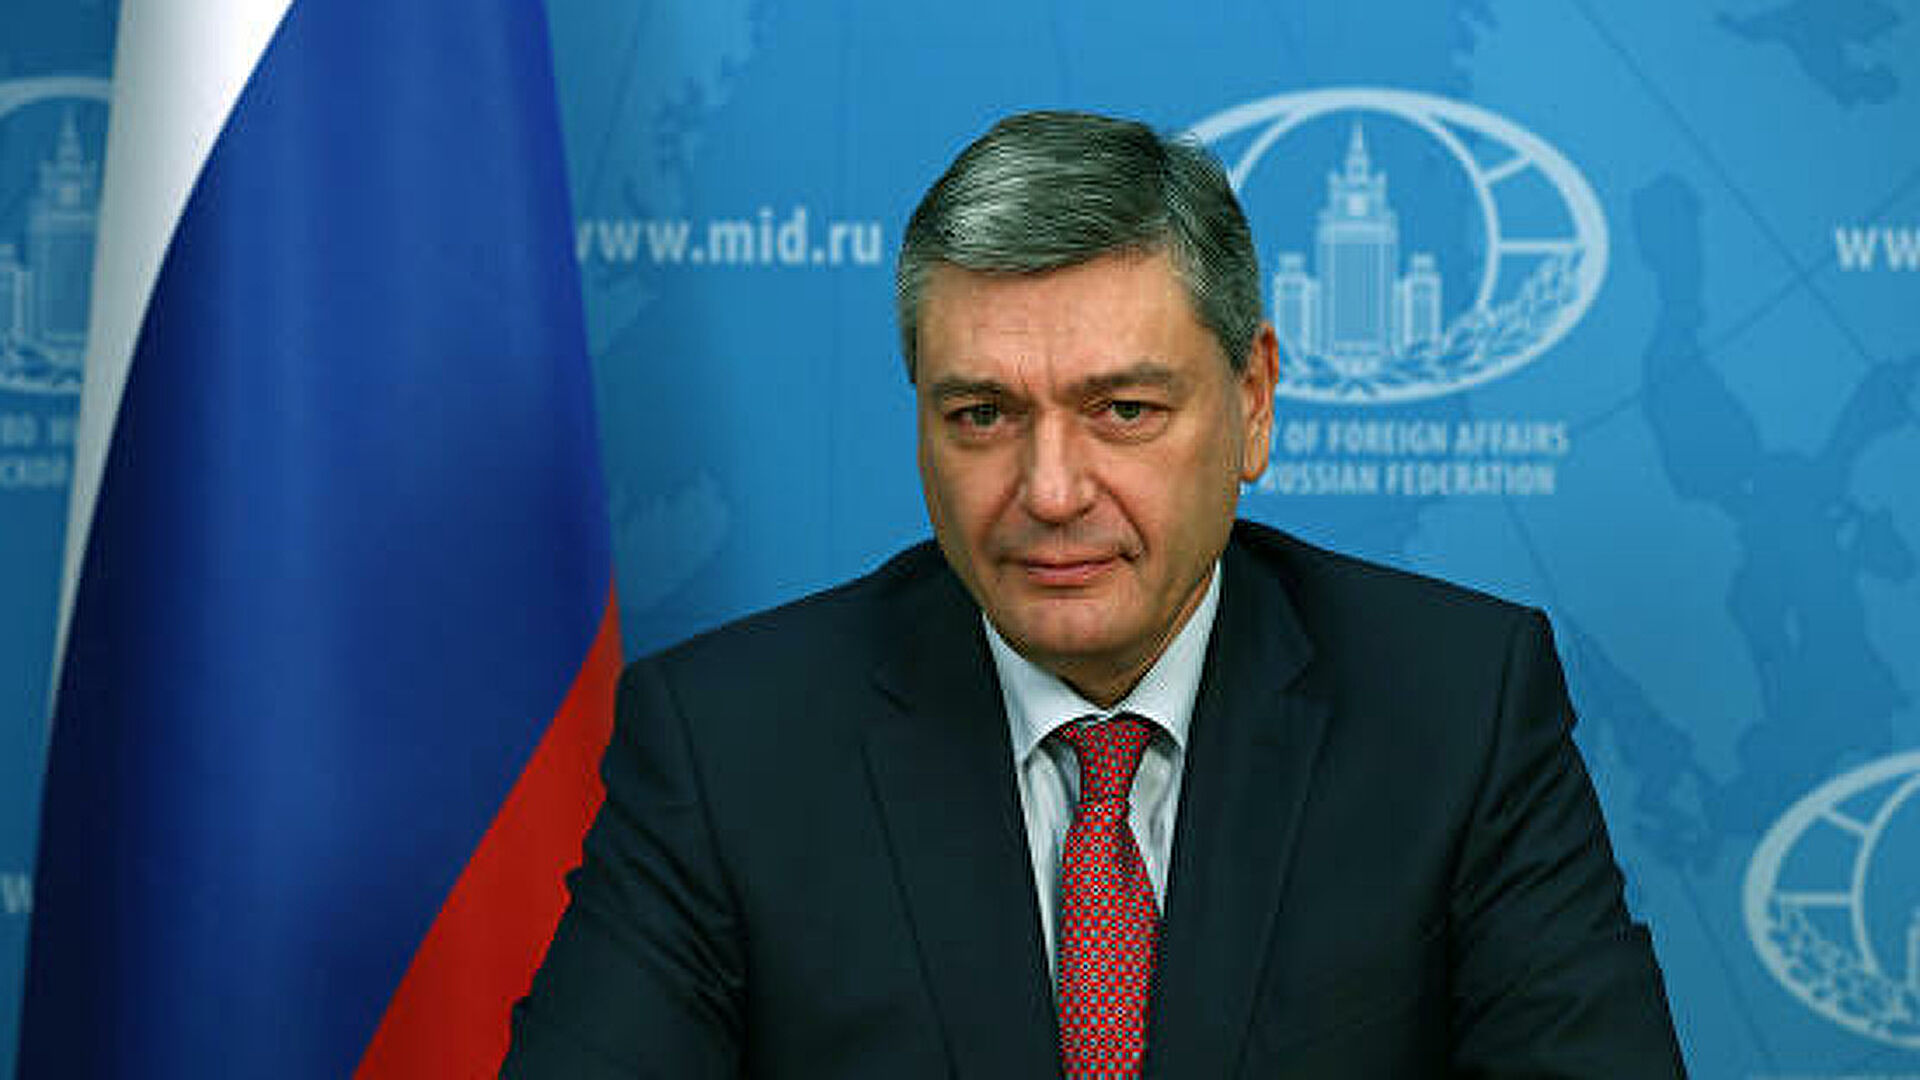 МИД: политика России в Центральной Азии максимально открыта